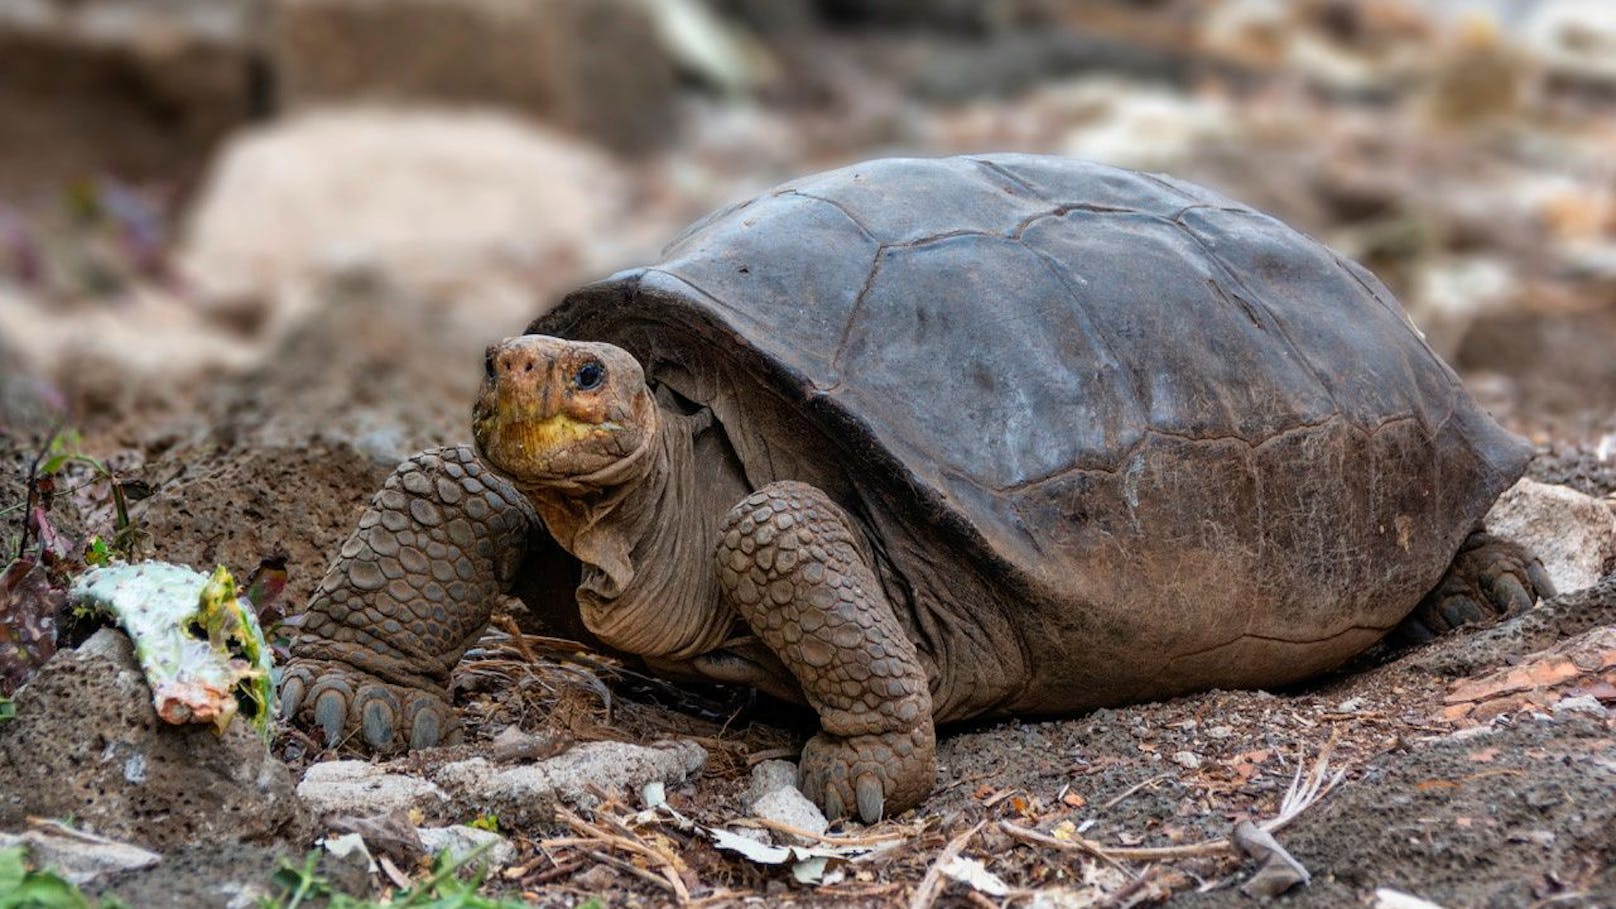  Die Schildkröte wurde bereits vor zwei Jahren entdeckt. Genanalysen zeigten, dass es sich um die Spezies Chelonoidis phantasticus handelt.